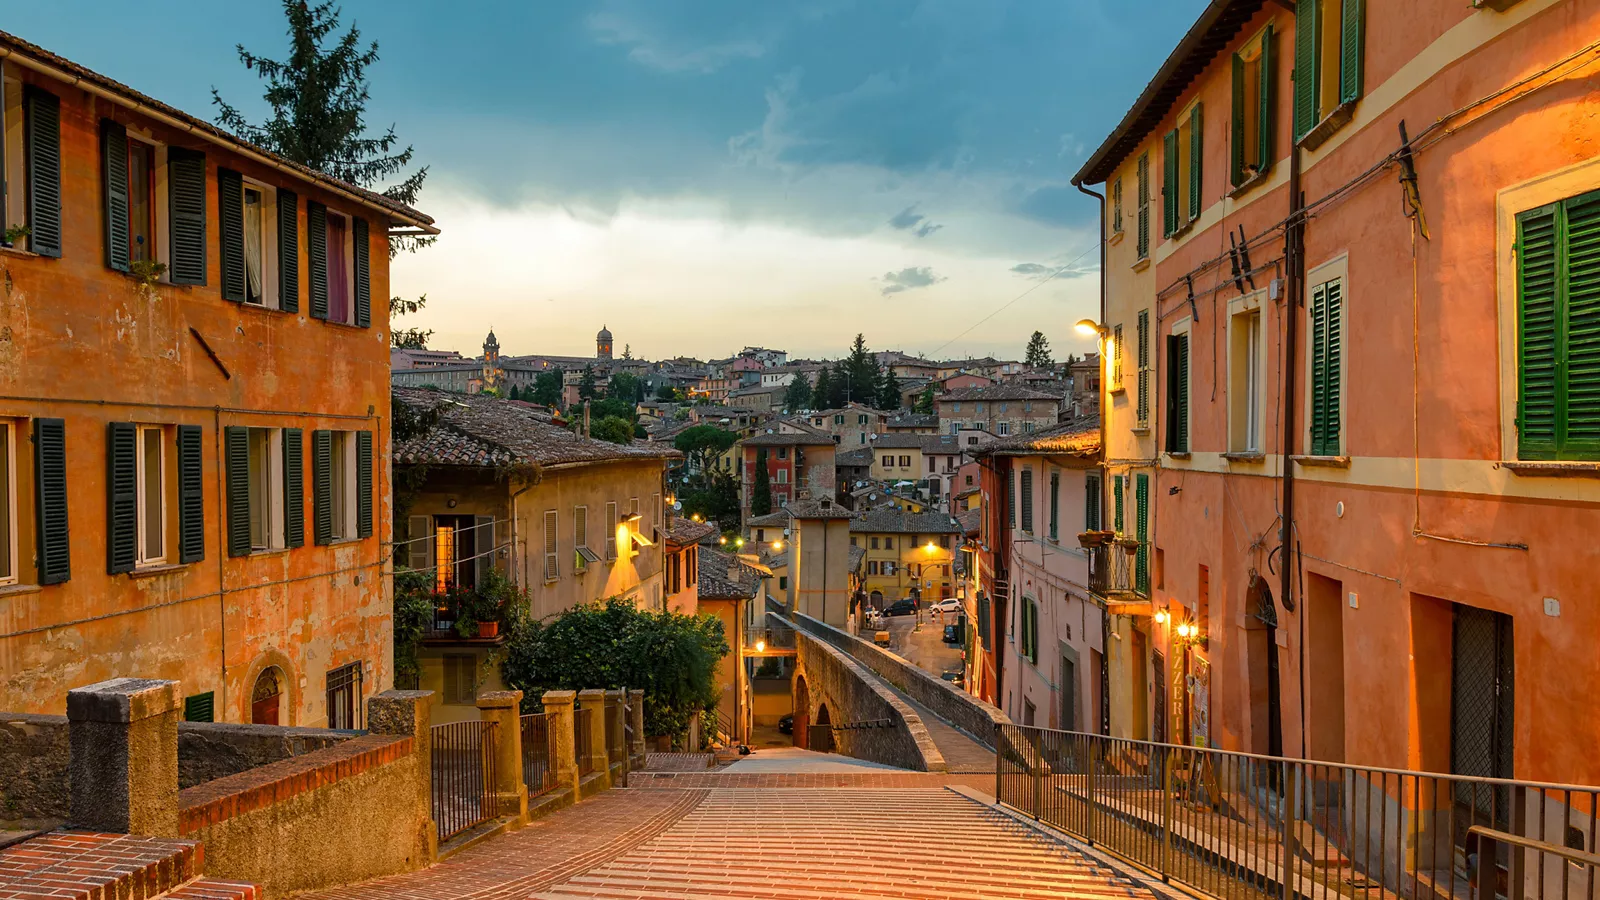 Perugia, joya histórica y artística, faro del centro de Italia